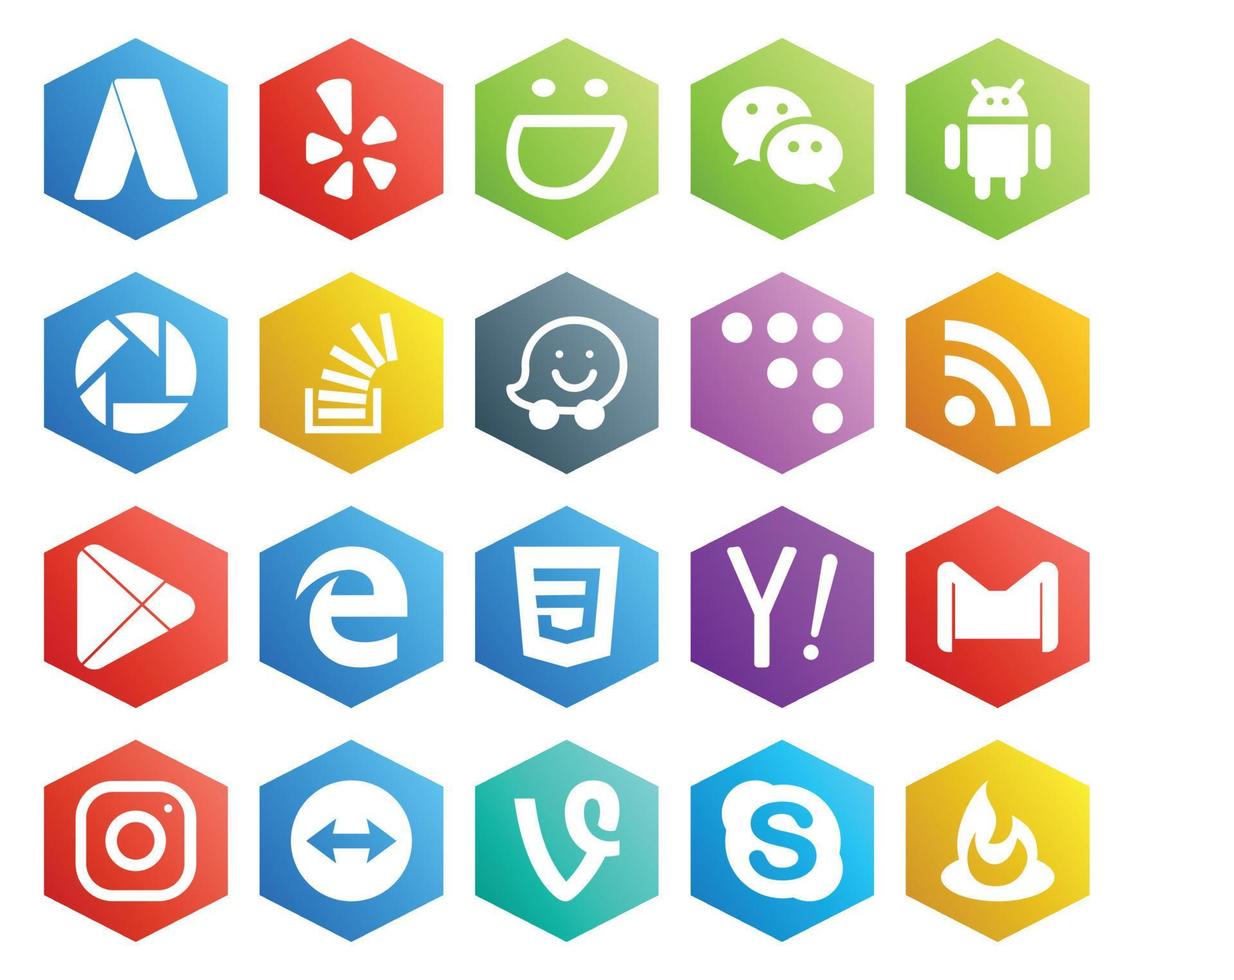 Paquete de 20 íconos de redes sociales que incluye preguntas de aplicaciones css google play coderwall vector